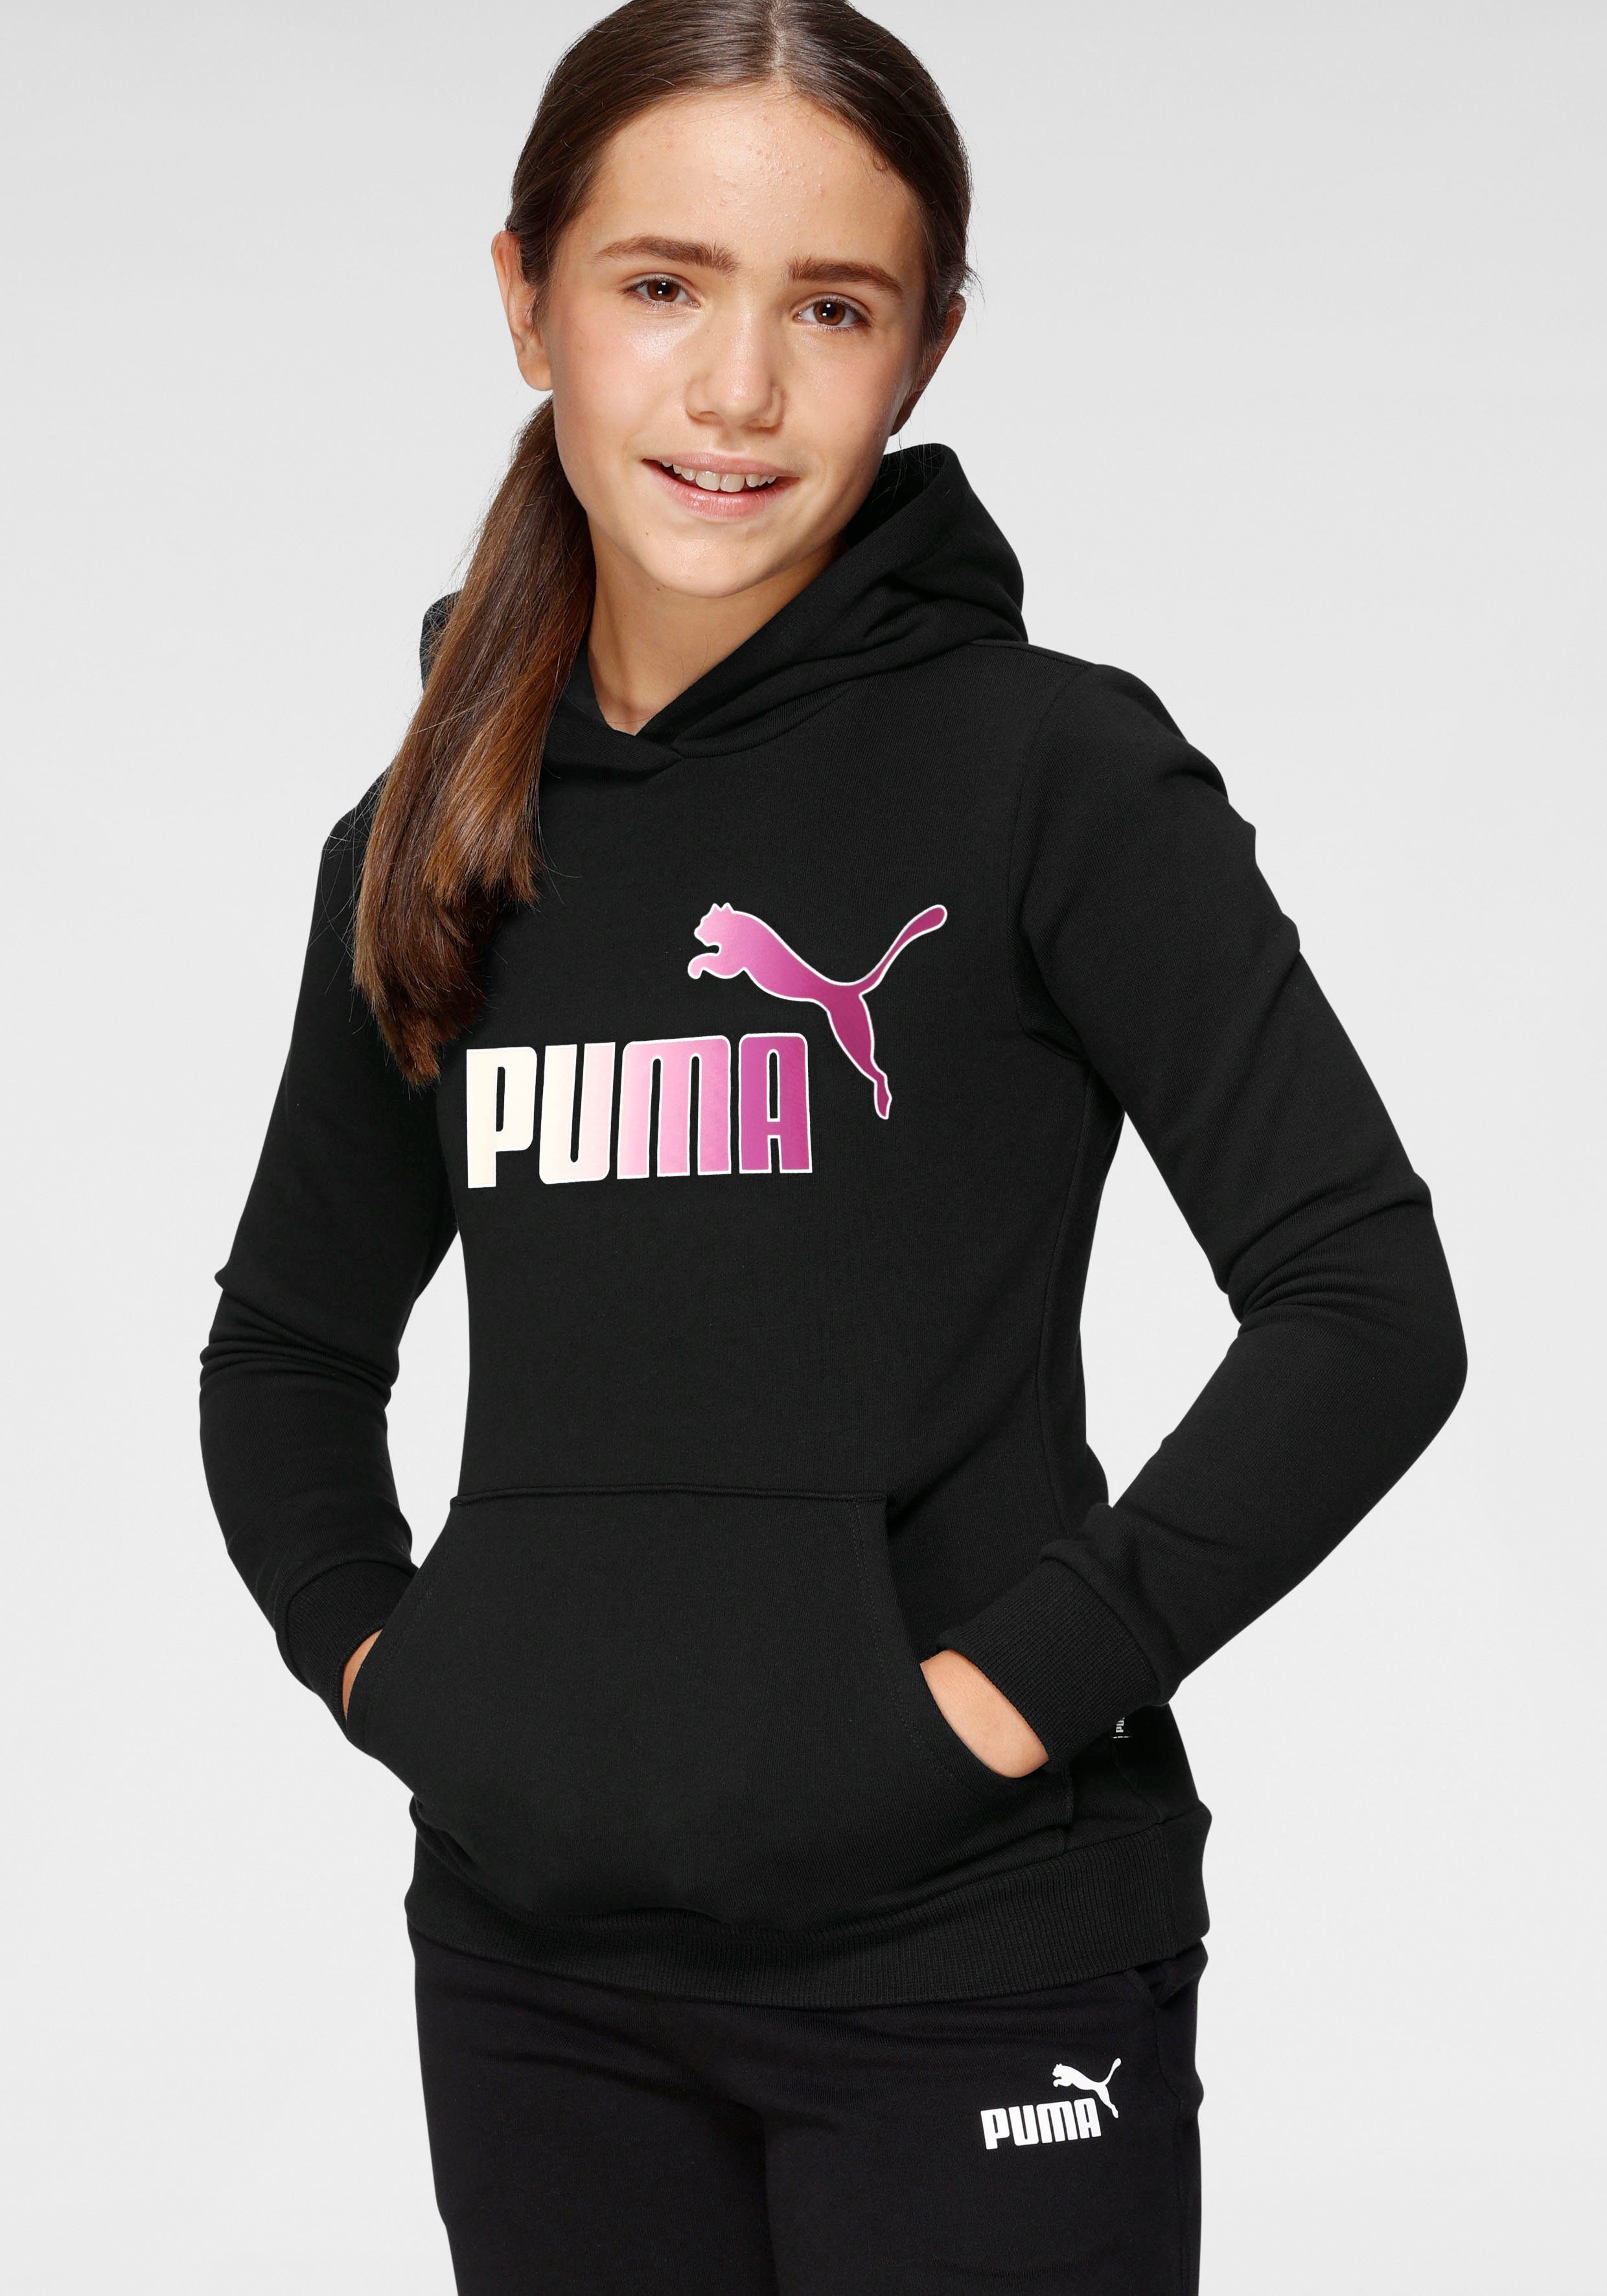 PUMA Mädchen Sportbekleidung online kaufen | OTTO